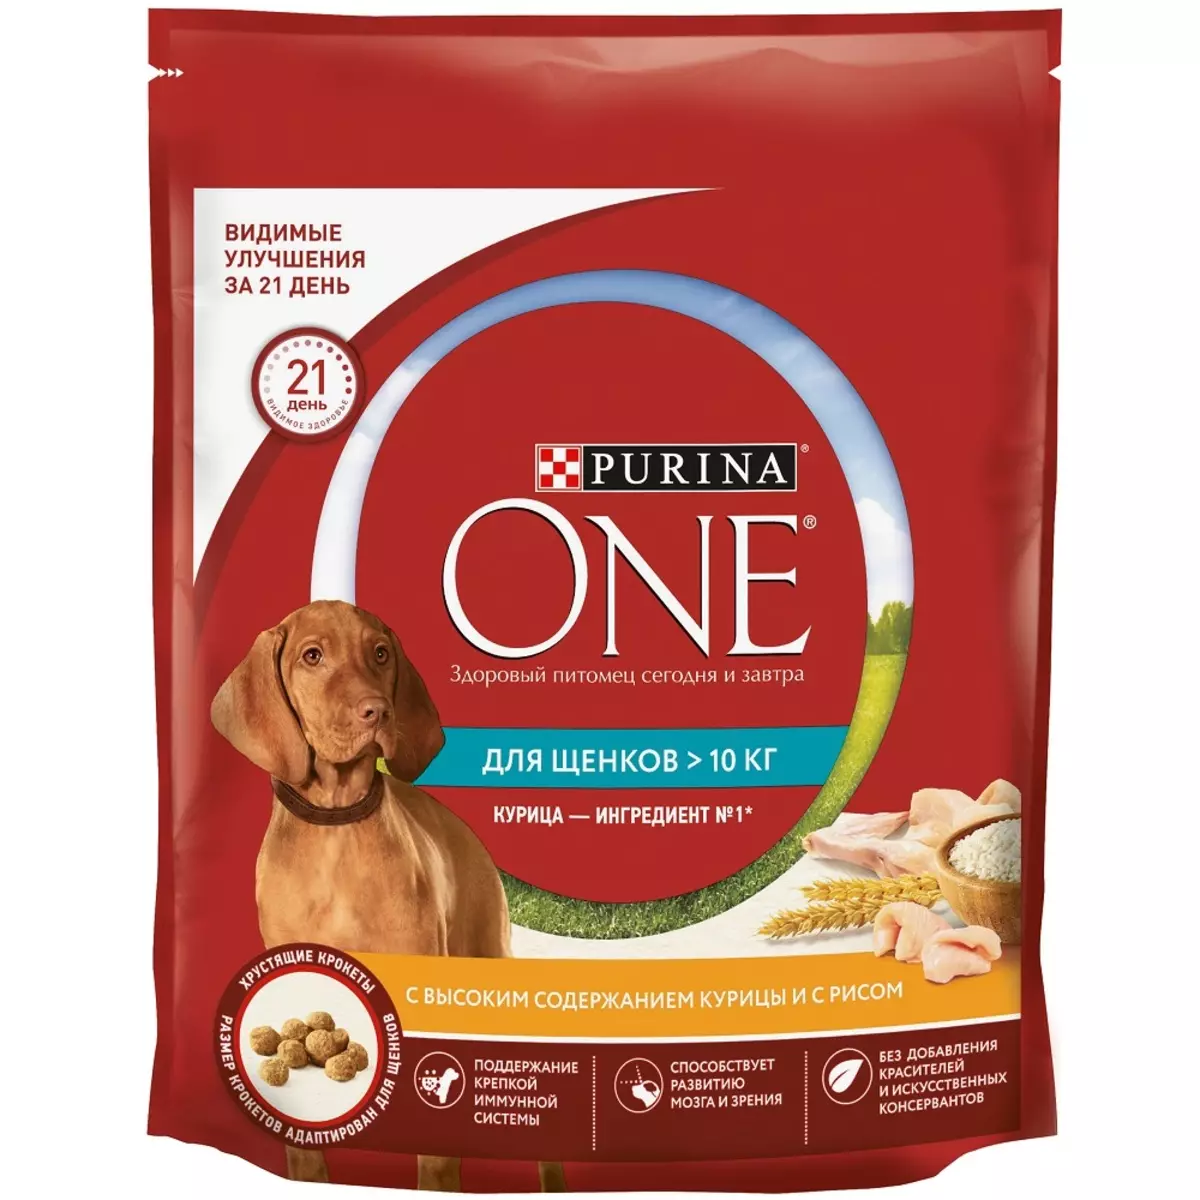 पुरिना कुत्रा फीड: मोठ्या आणि मध्यम जातींसाठी सूक्ष्म अन्न, कुत्री आणि प्रौढ कुत्रे, पुनरावलोकनेसाठी कुत्री ओले कॅन केलेला प्रीमियम वर्ग 10616_11